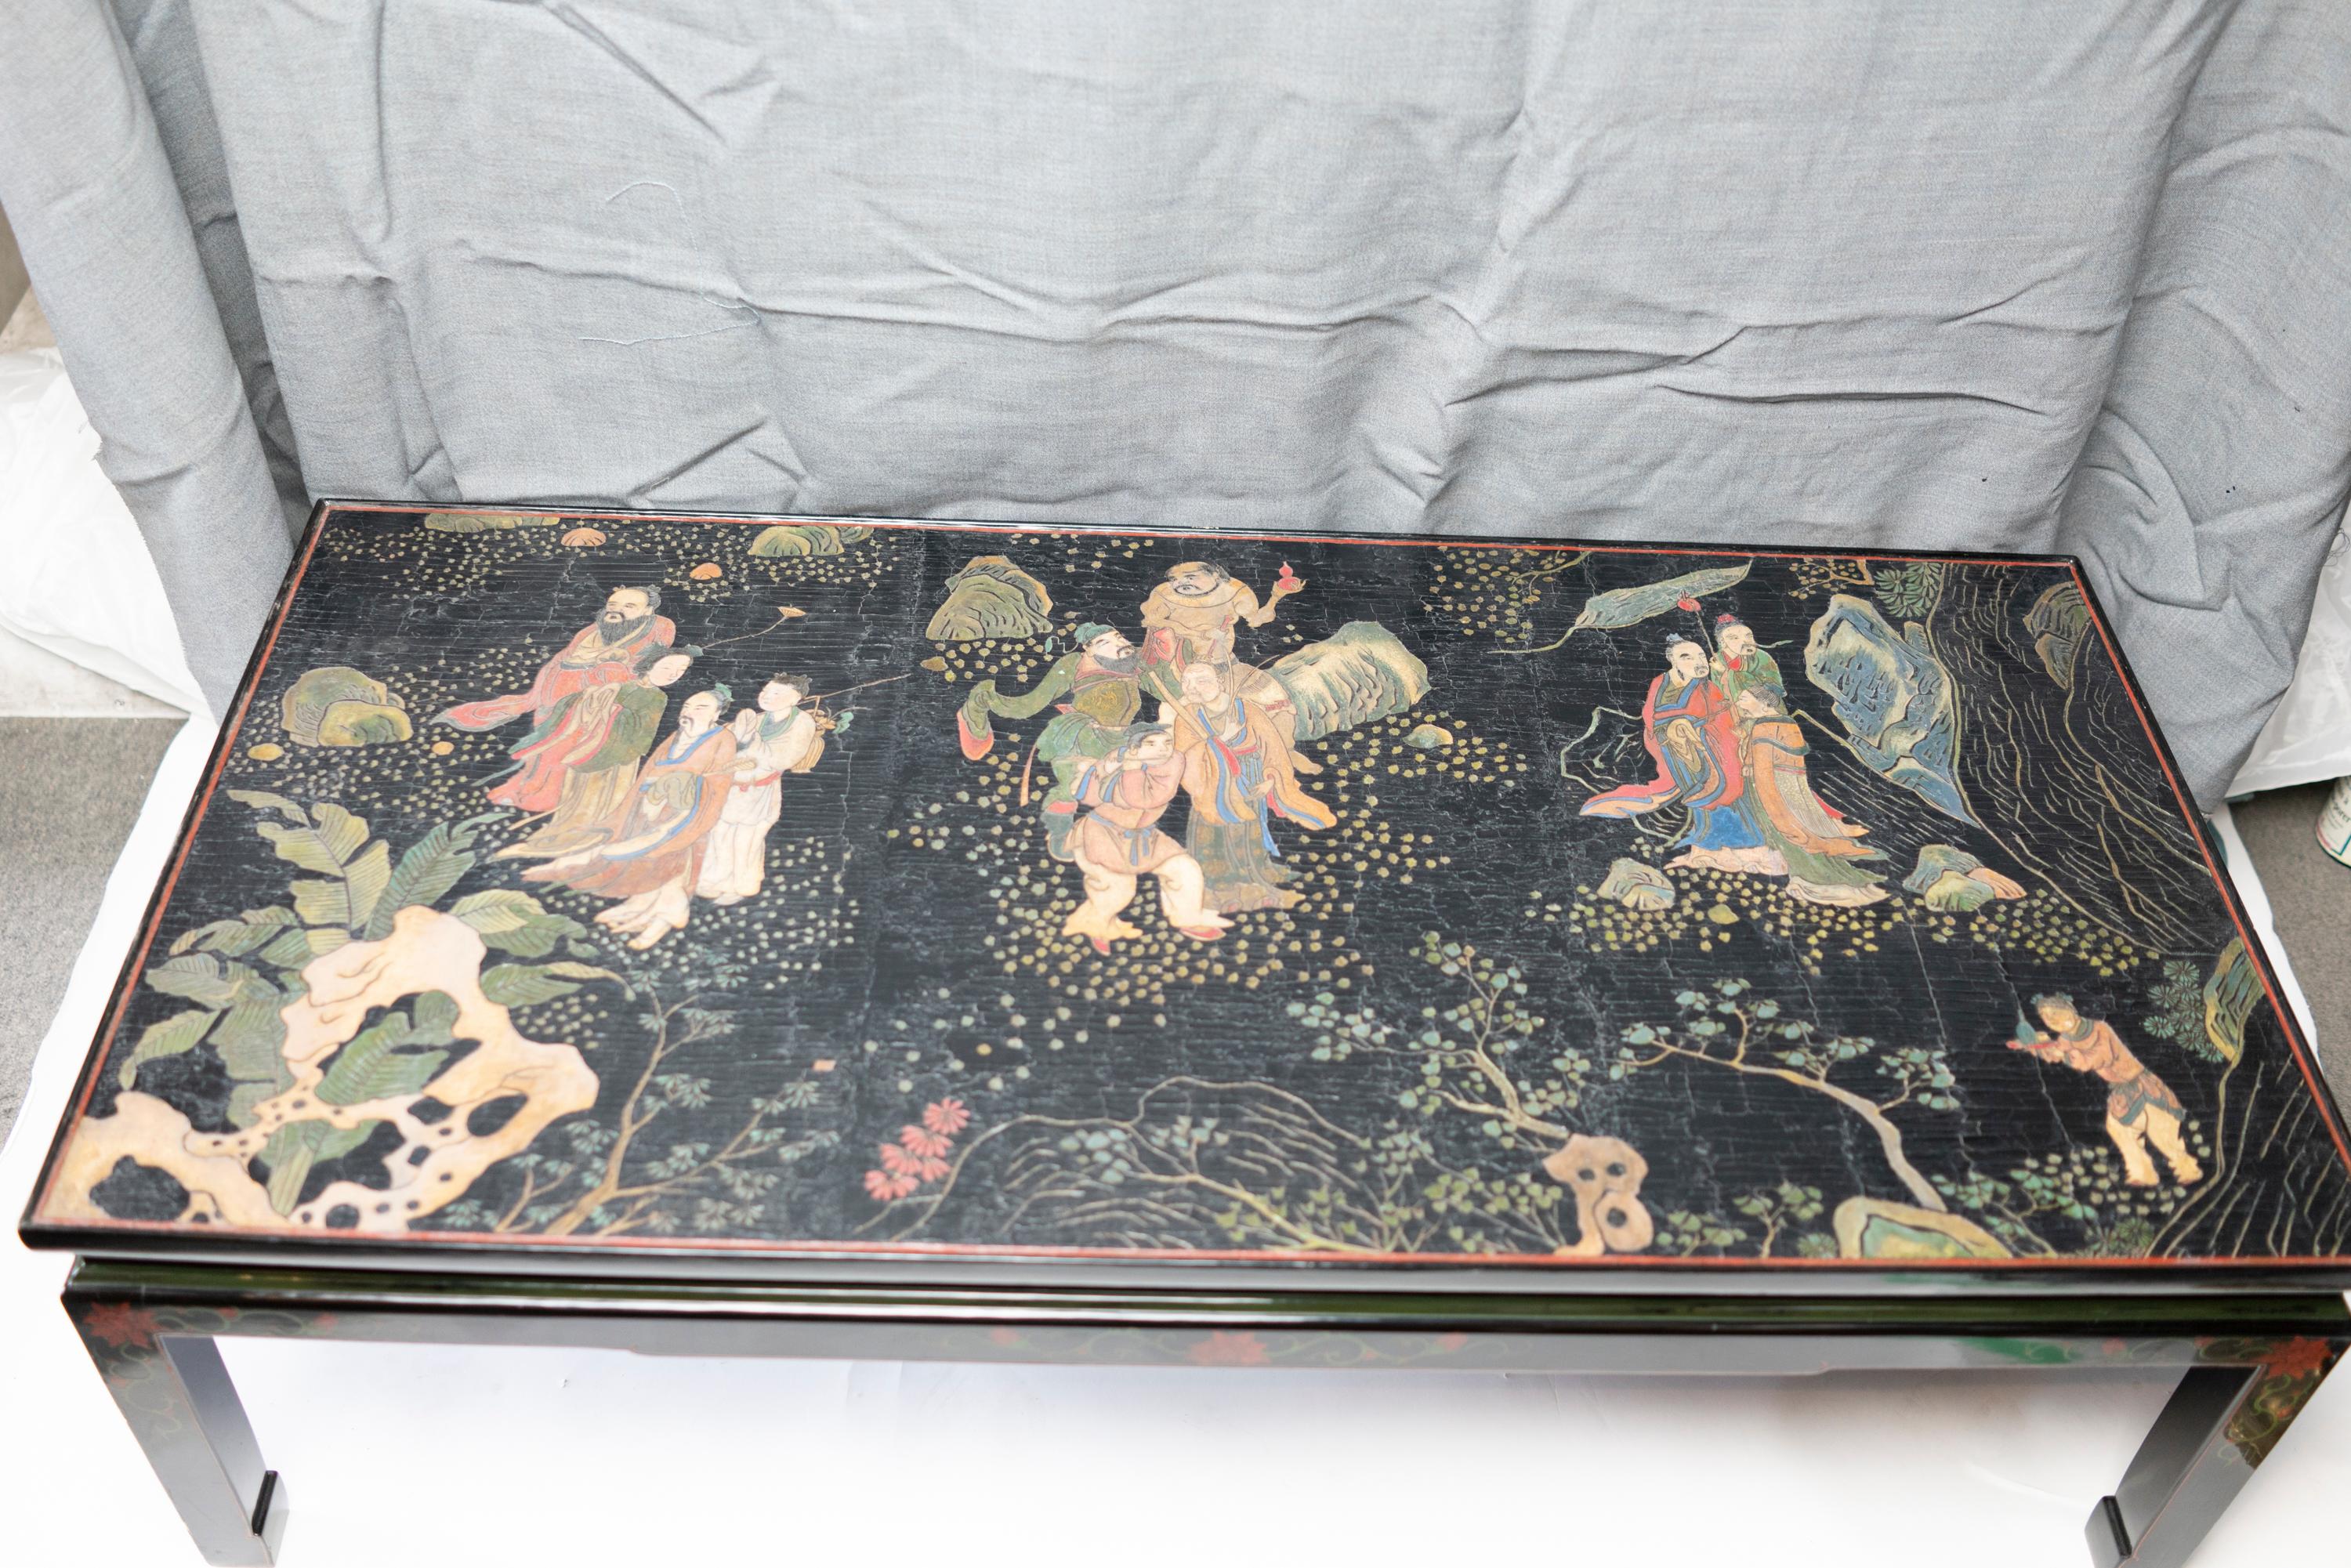 Rare panneau chinois en coromandel du milieu du XVIIIe siècle présentant de nombreux immortels et figures du folklore taoïste,
la base de la table est plus récente.

  